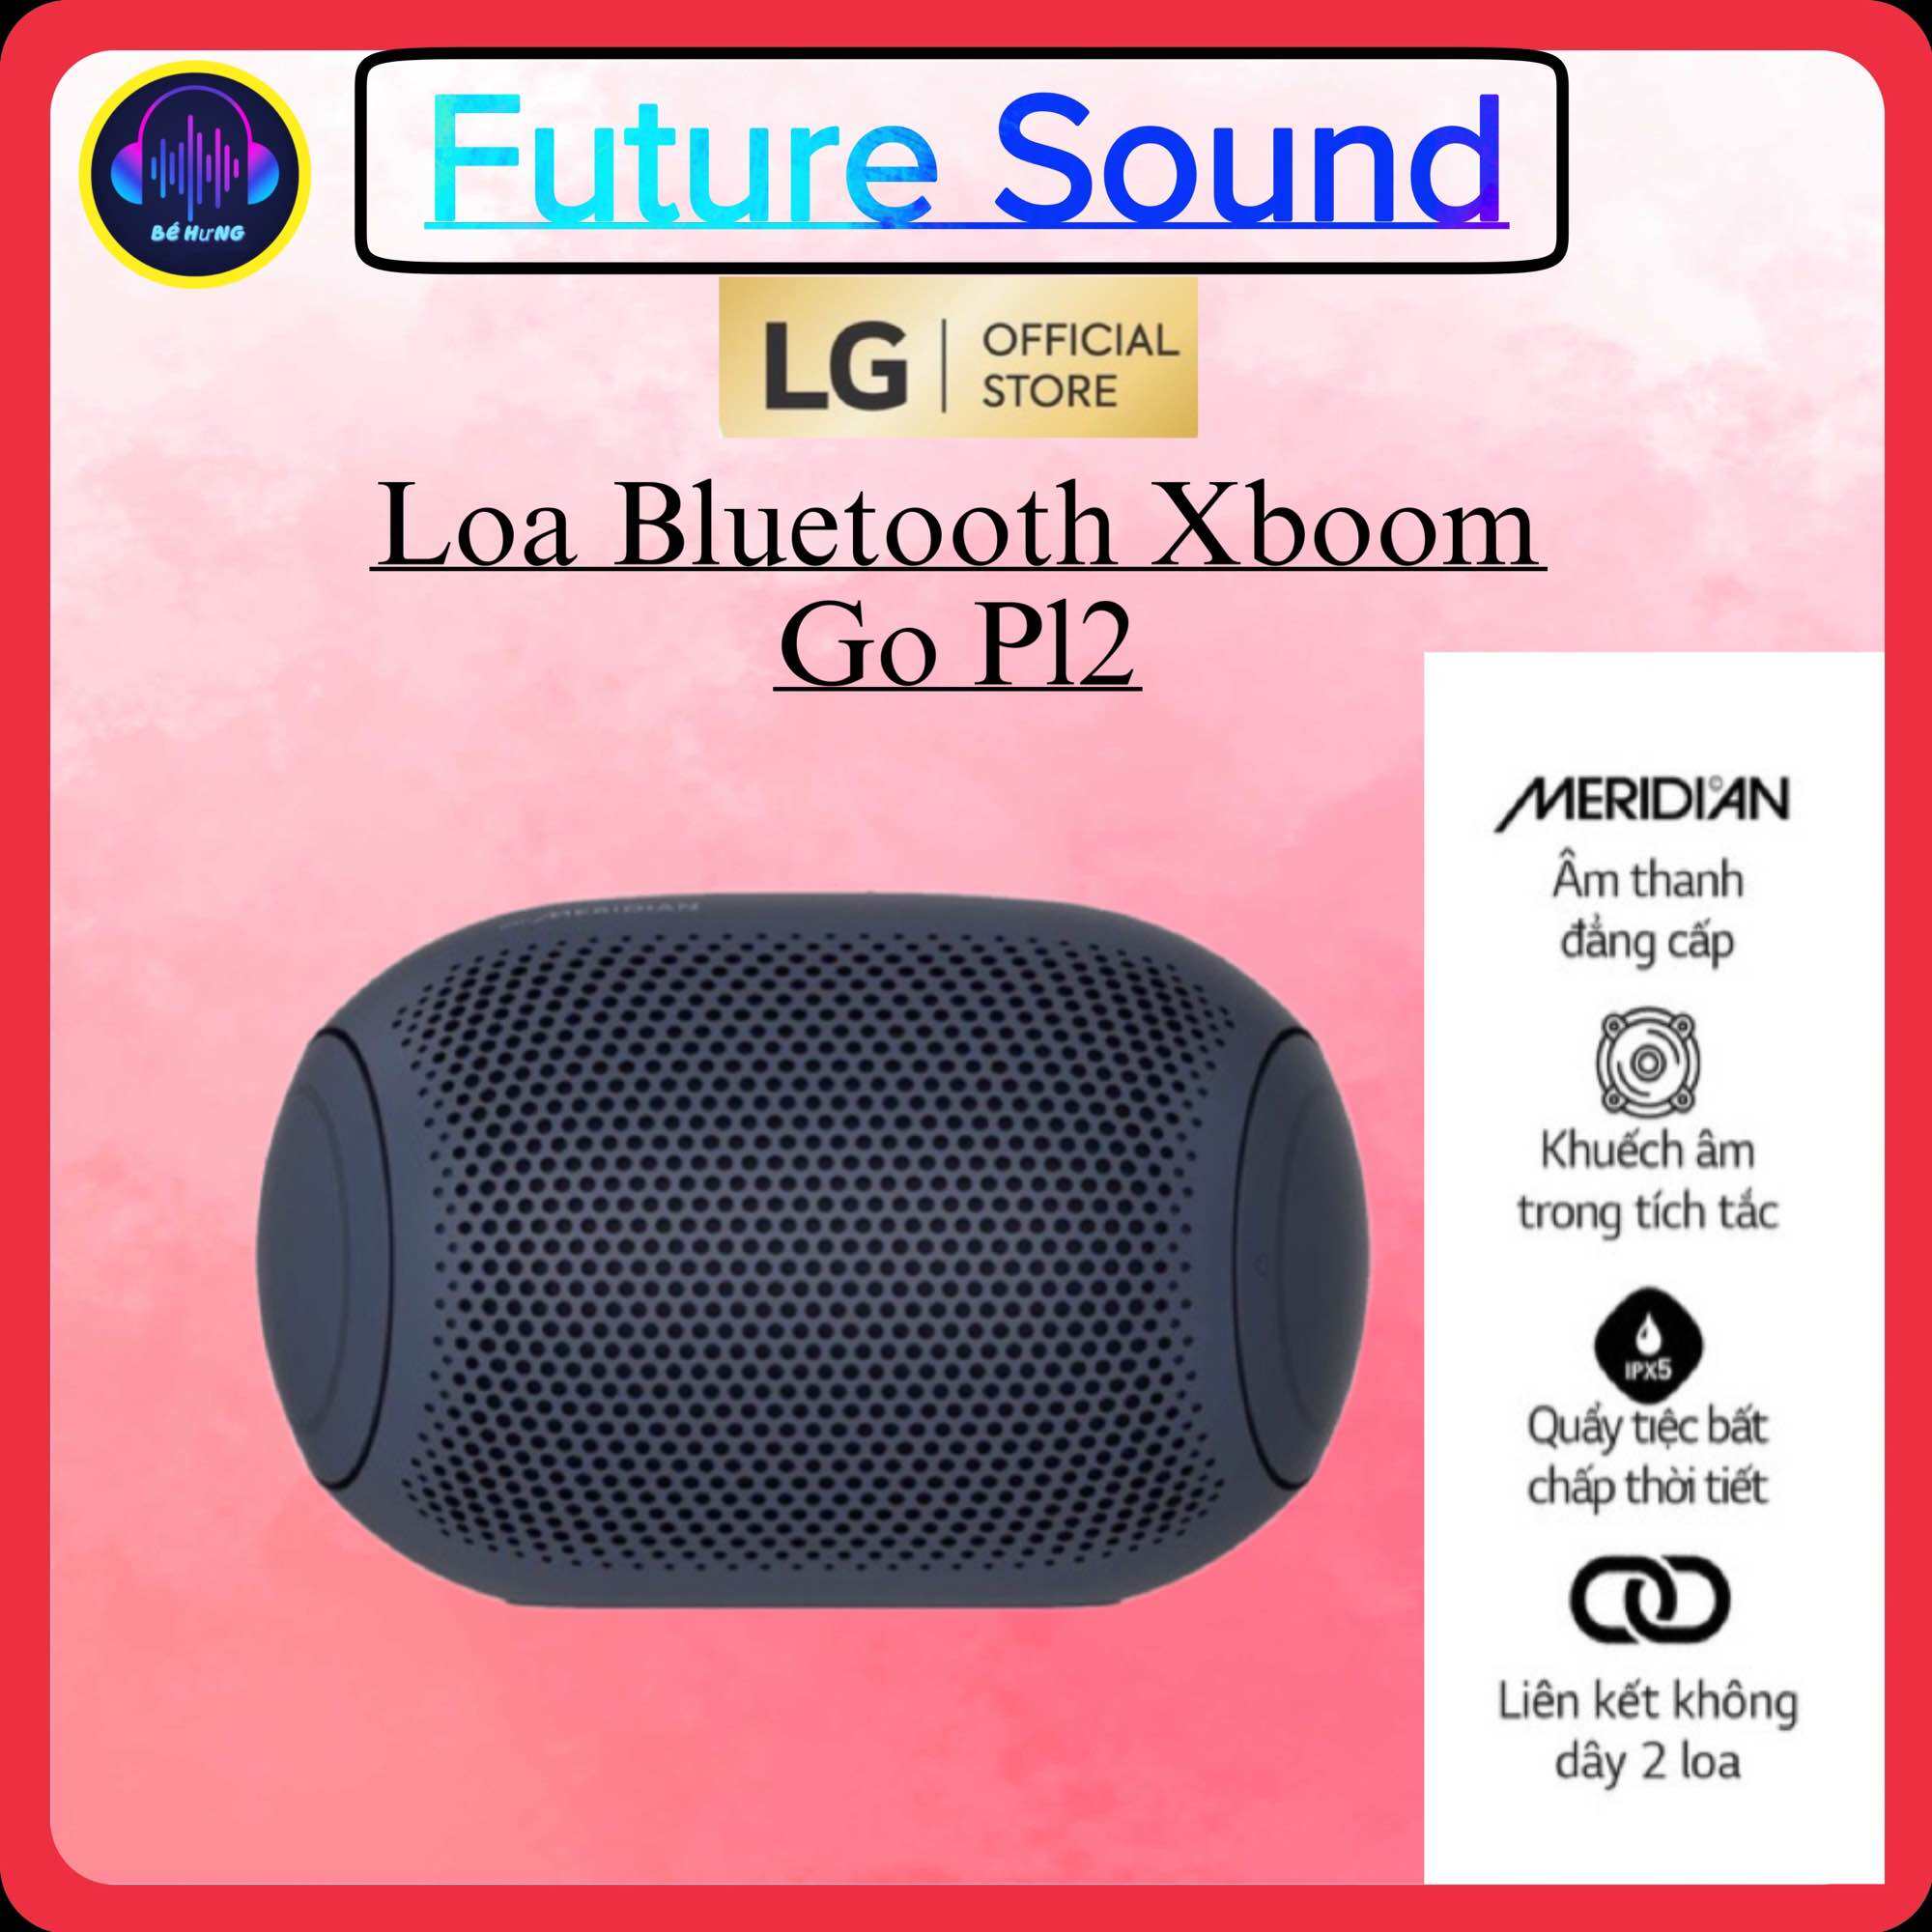 Loa bluetooth LG xboom Go PL2 chính hãng bảo hành 12 tháng